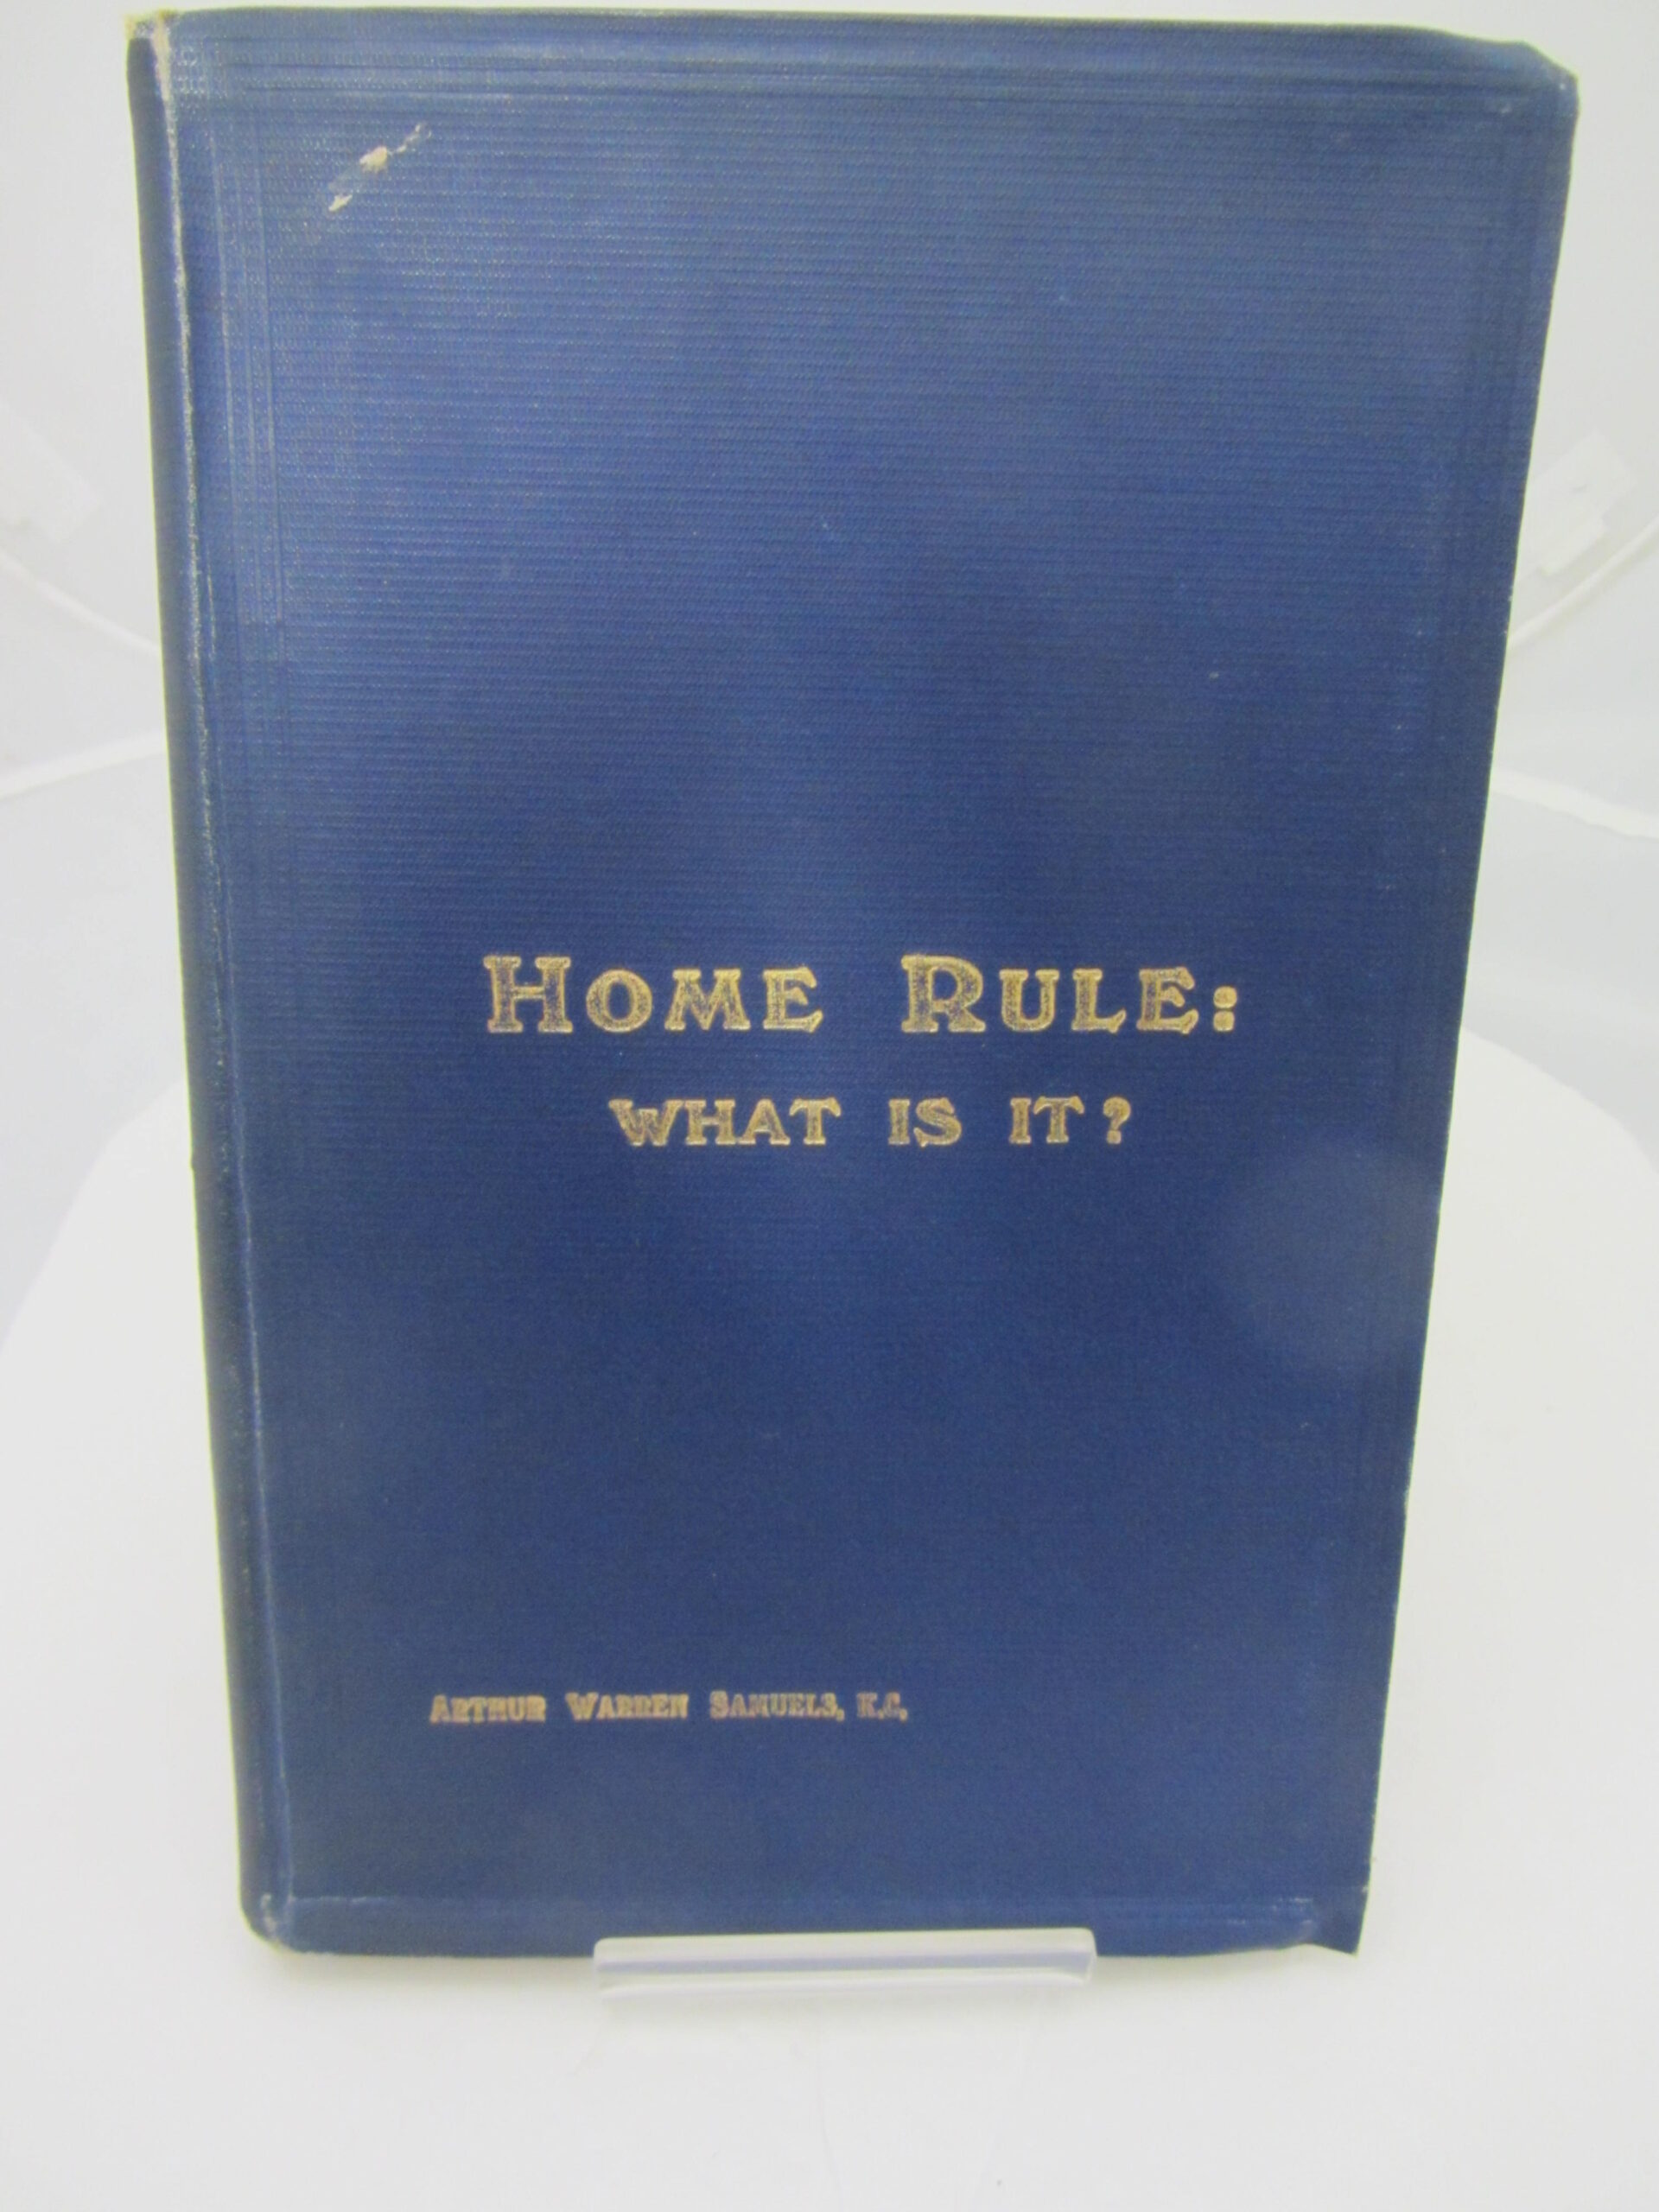 Home Rule: What Is It? by Arthur Warren Samuel